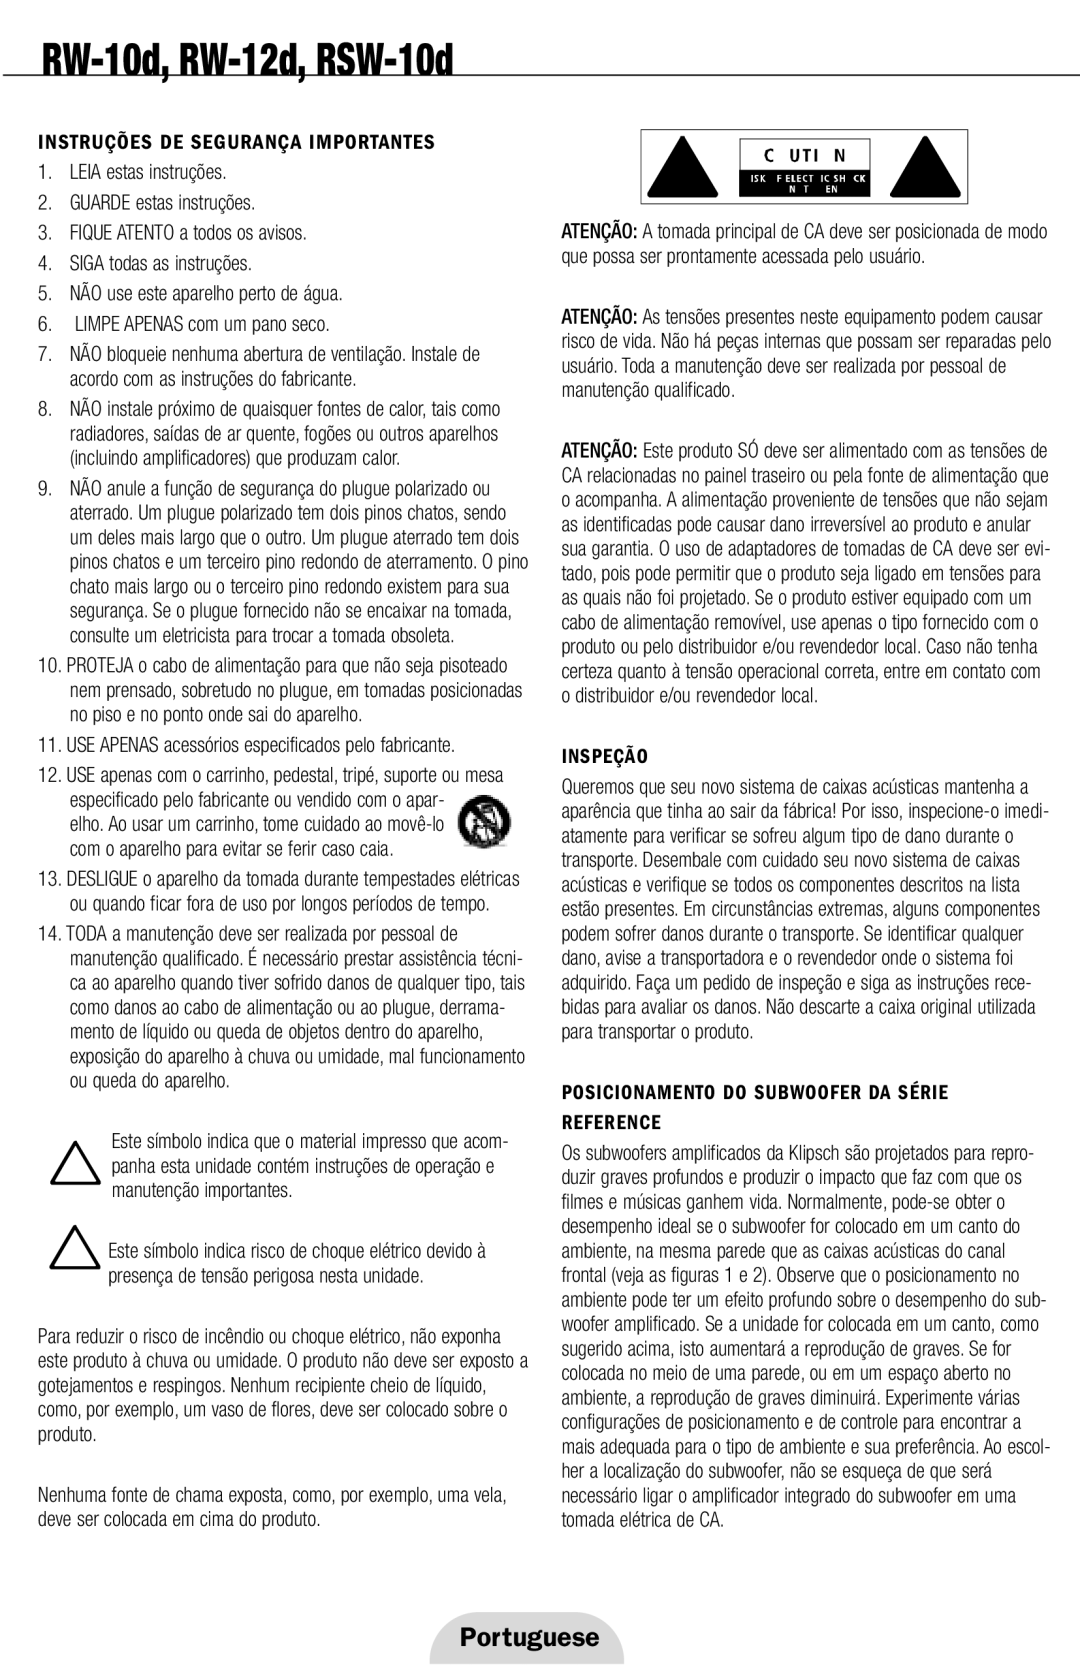 Klipsch RW-10d Portuguese, Instruções De Segurança Importantes, LEIA estas instruções 2.GUARDE estas instruções, Inspeção 